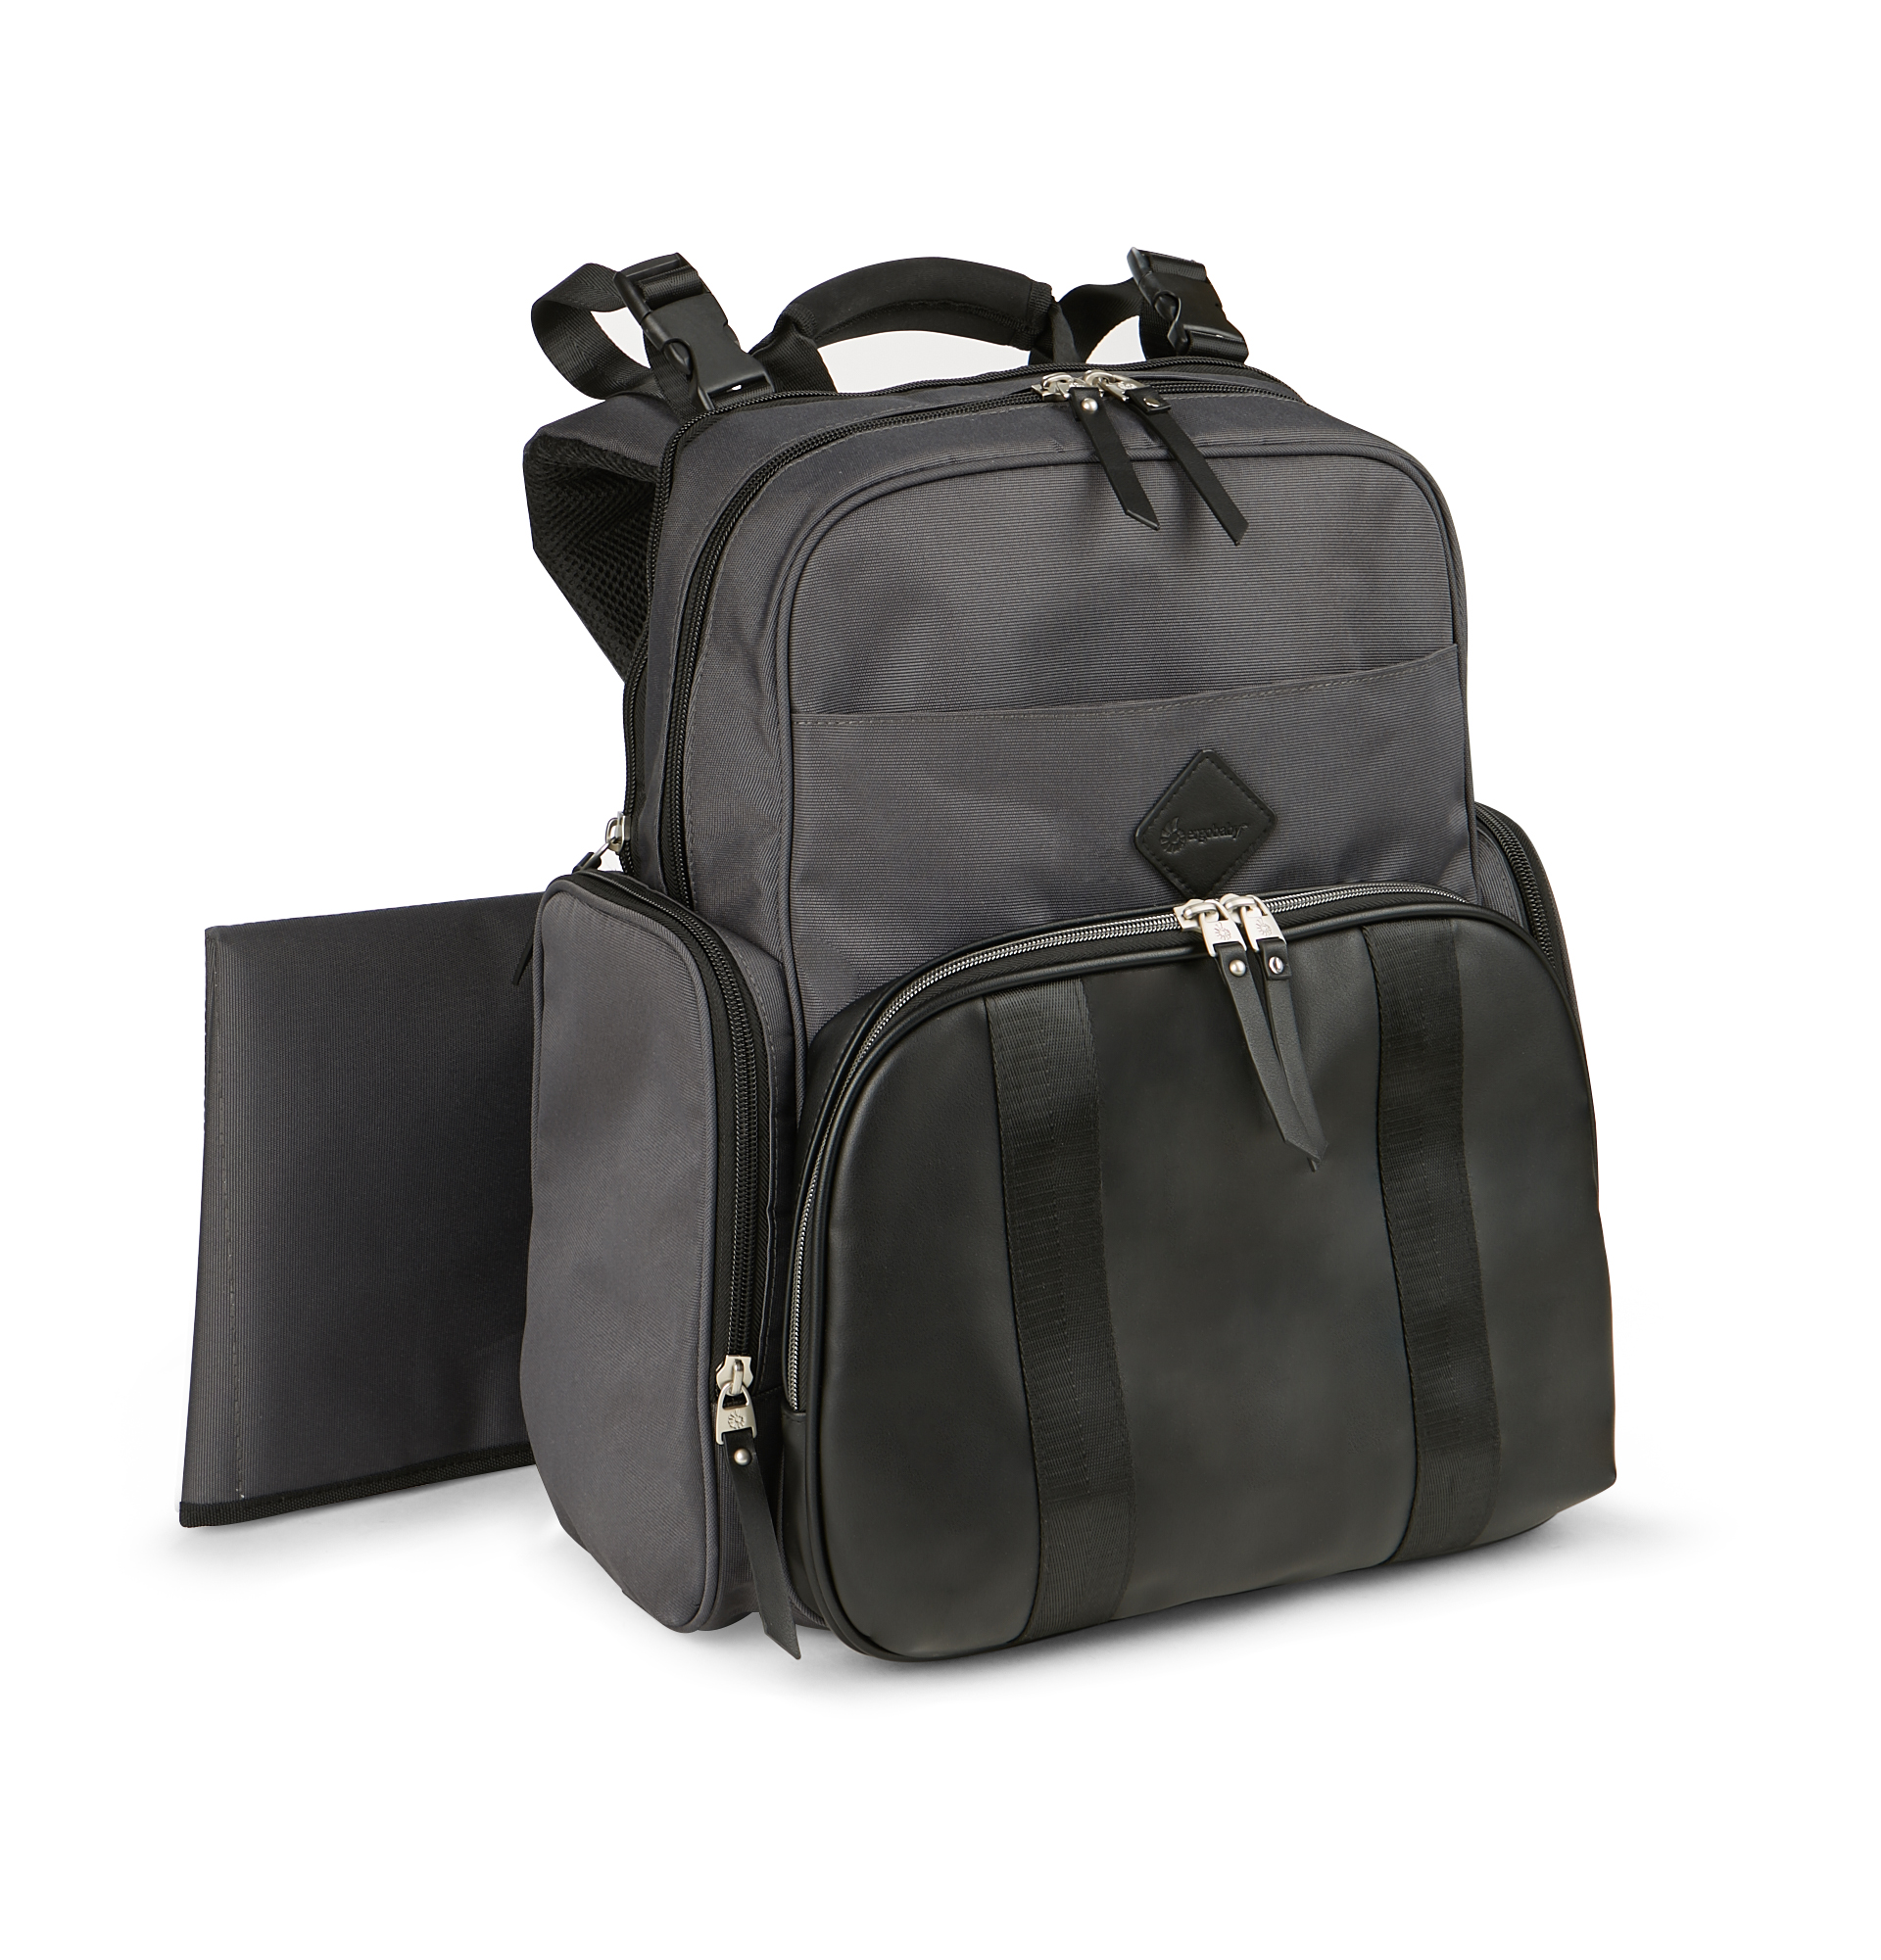 Ergobaby Adjustable Shoulder Strap Inside Pockets Backpack Diaper Bags, Black - image 3 of 10